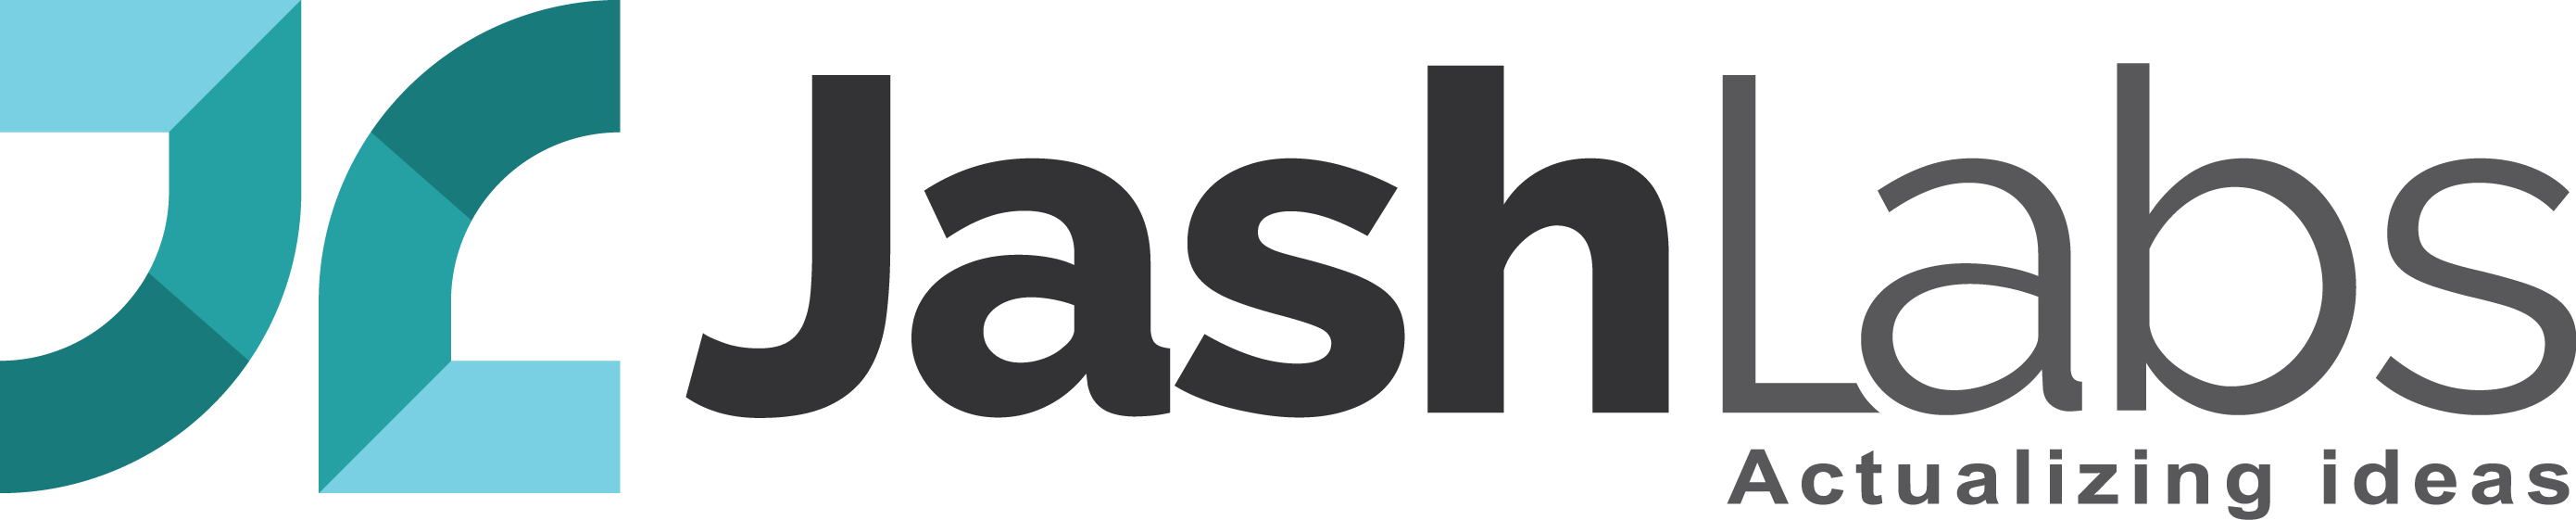 Jashlabs logo